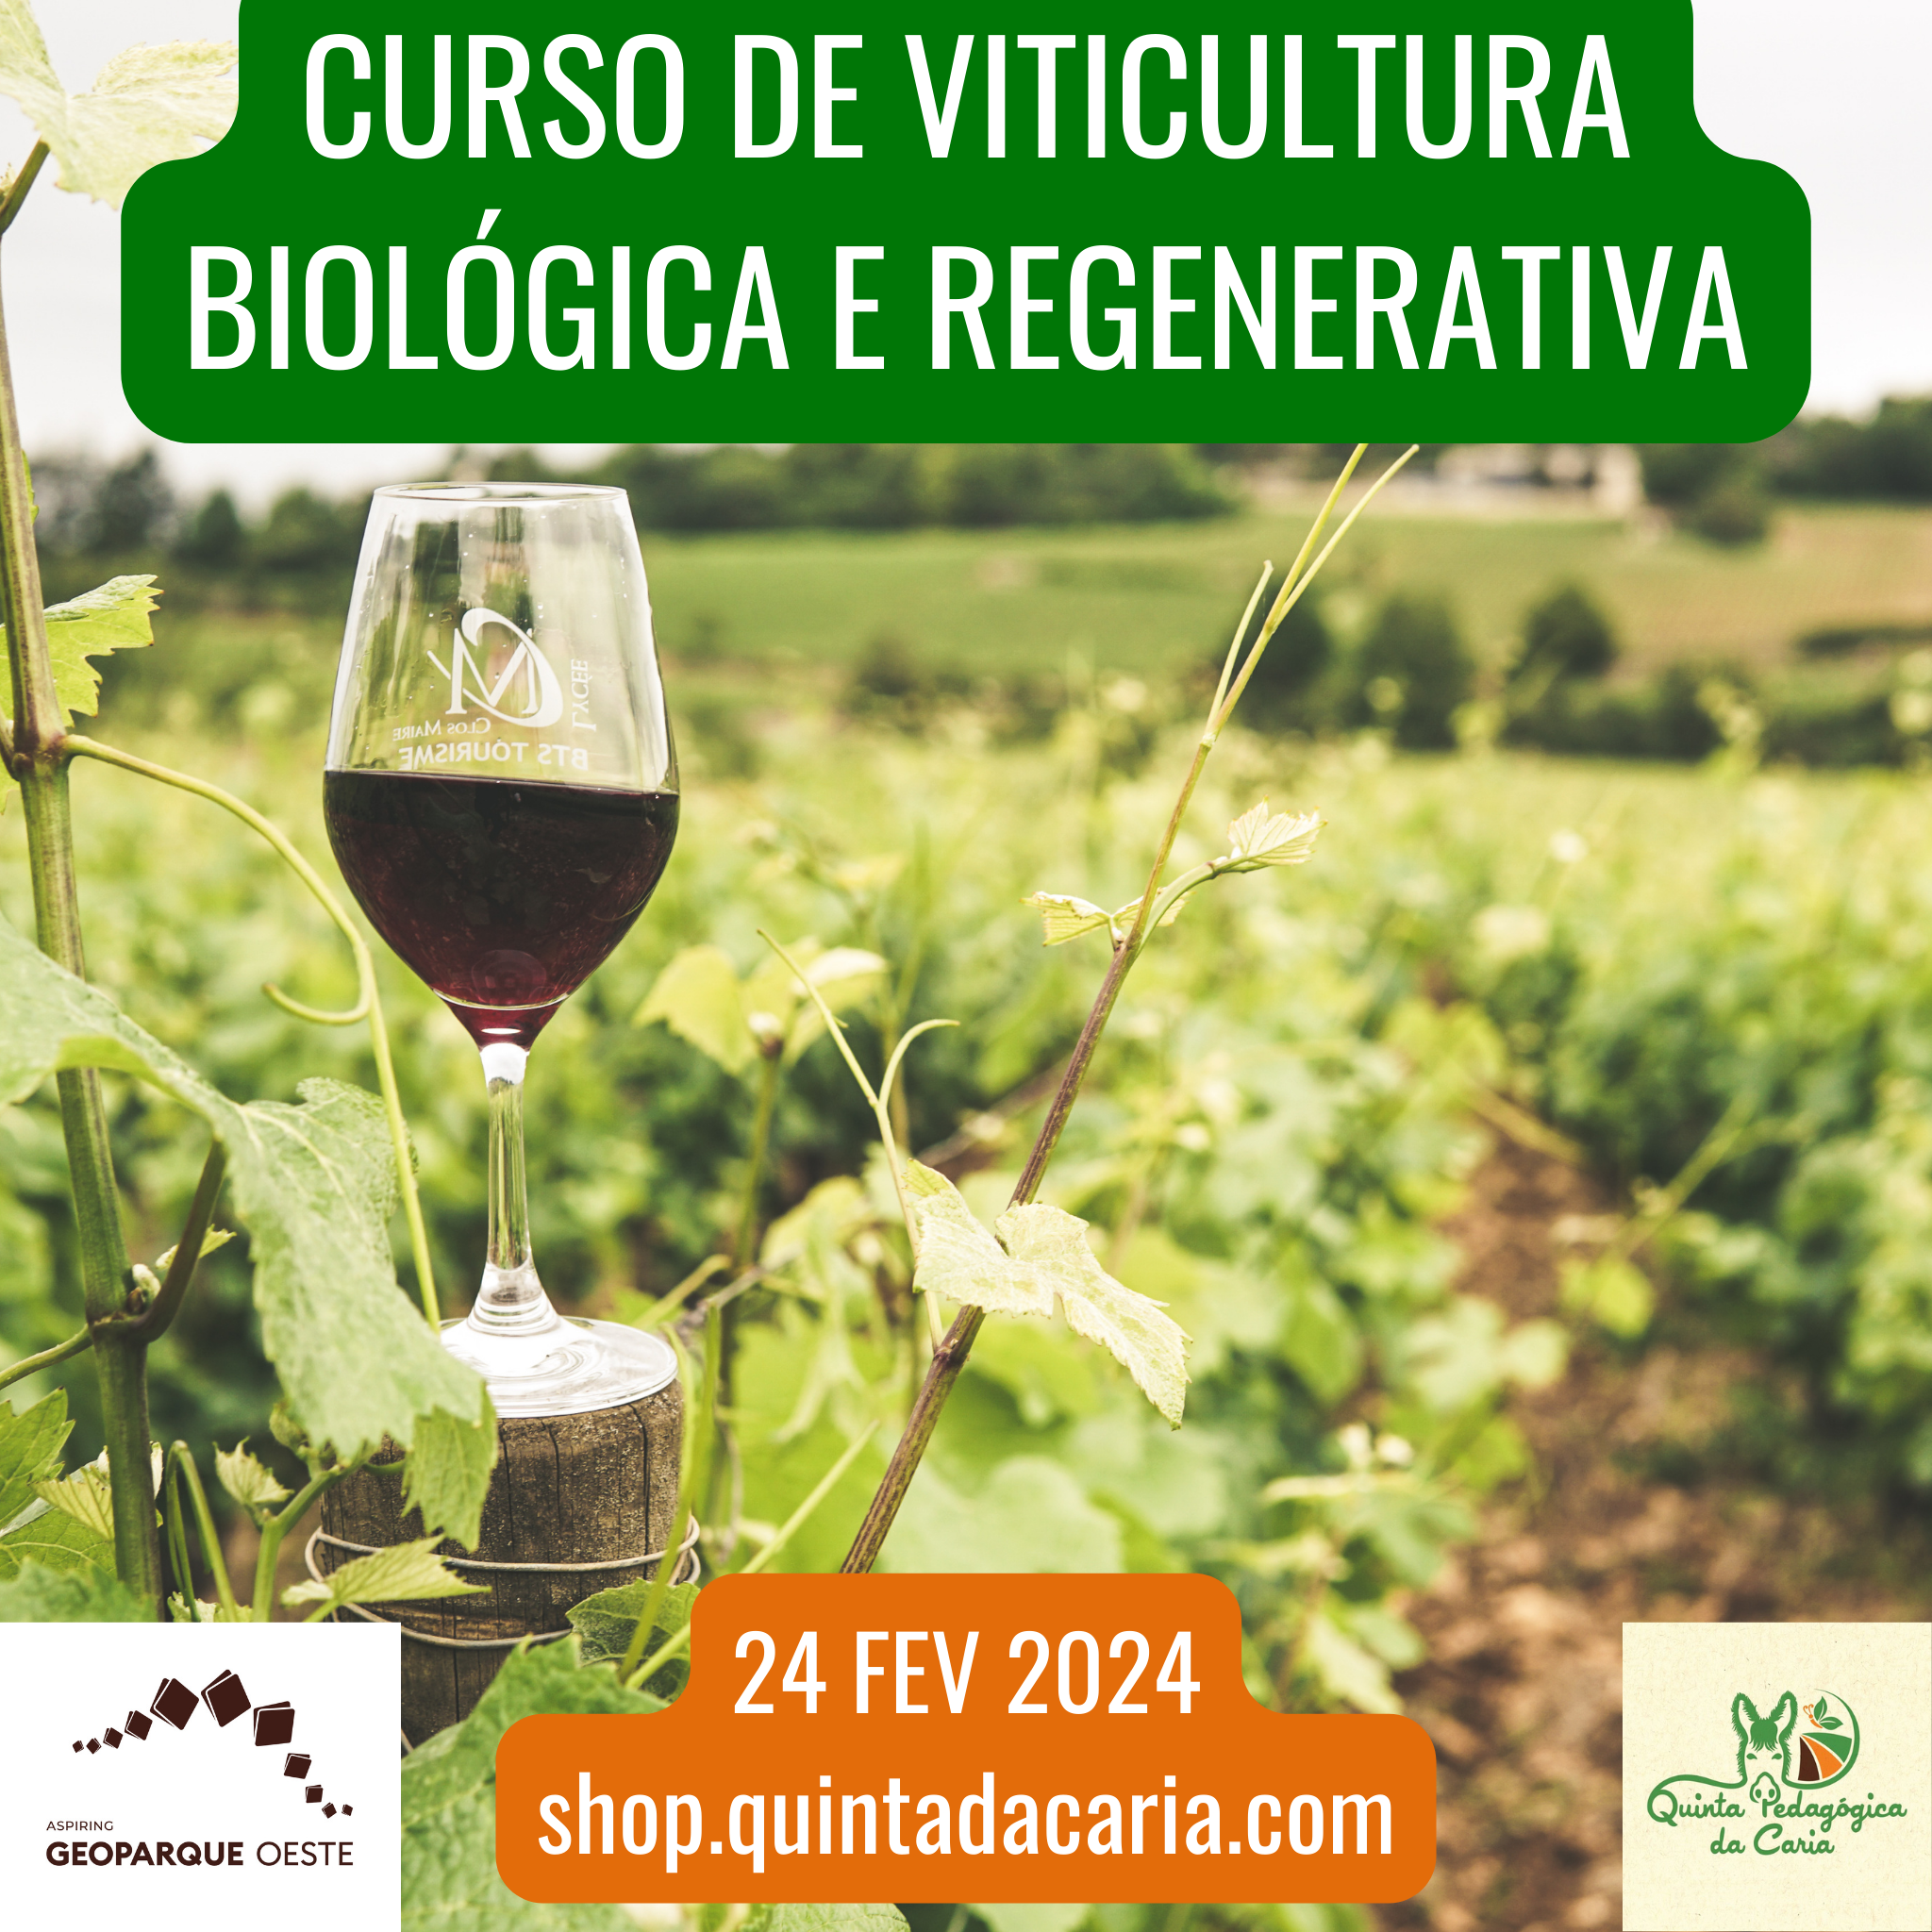 Curso de Viticultura Biológica e Regenerativa - PRESENCIAL (50% prático) 24 Fevereiro 2024